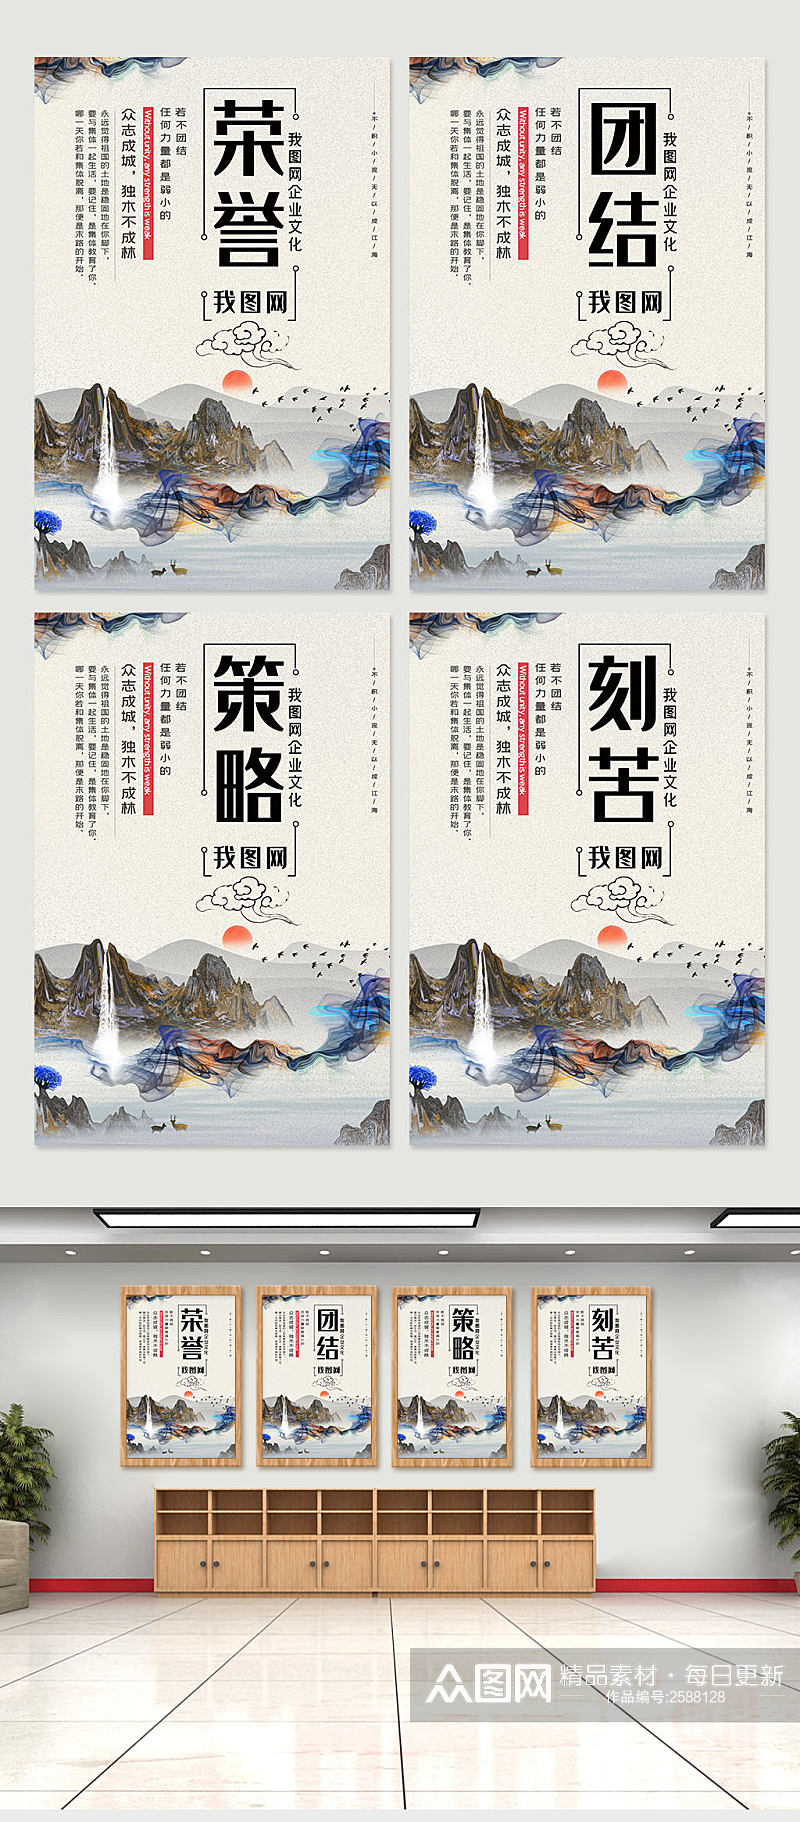 中国风水彩企业文化挂画展板设计素材